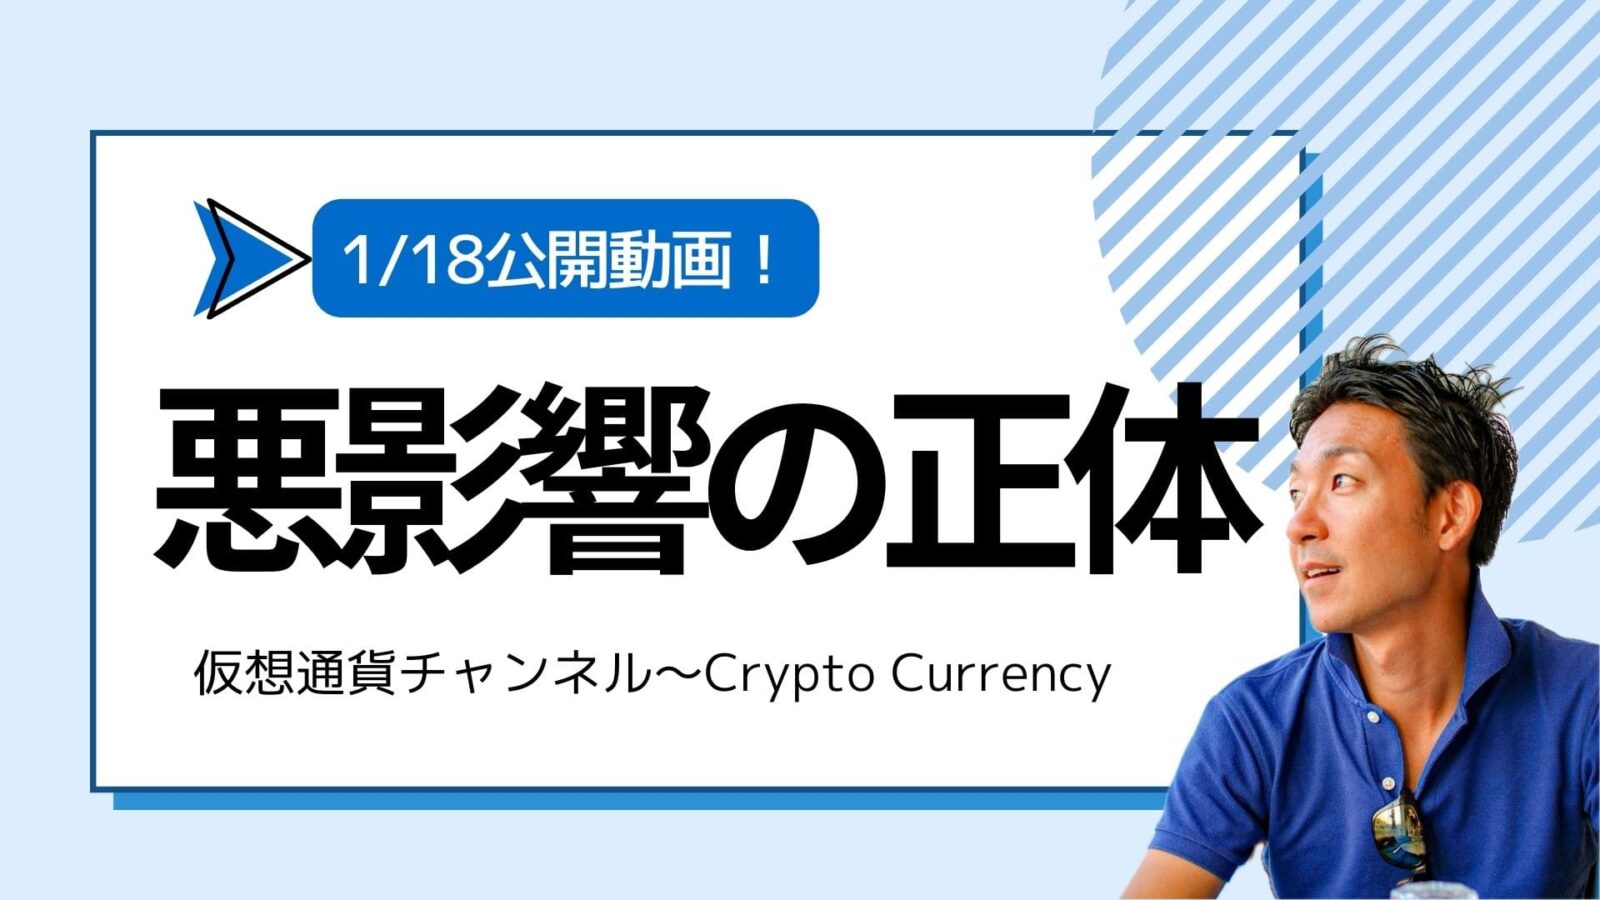 【仮想通貨チャンネル】Joe Takayamaさんが語る『ビットコインの長期的な悪影響の正体。しばらくは不安定な相場か』1/18公開